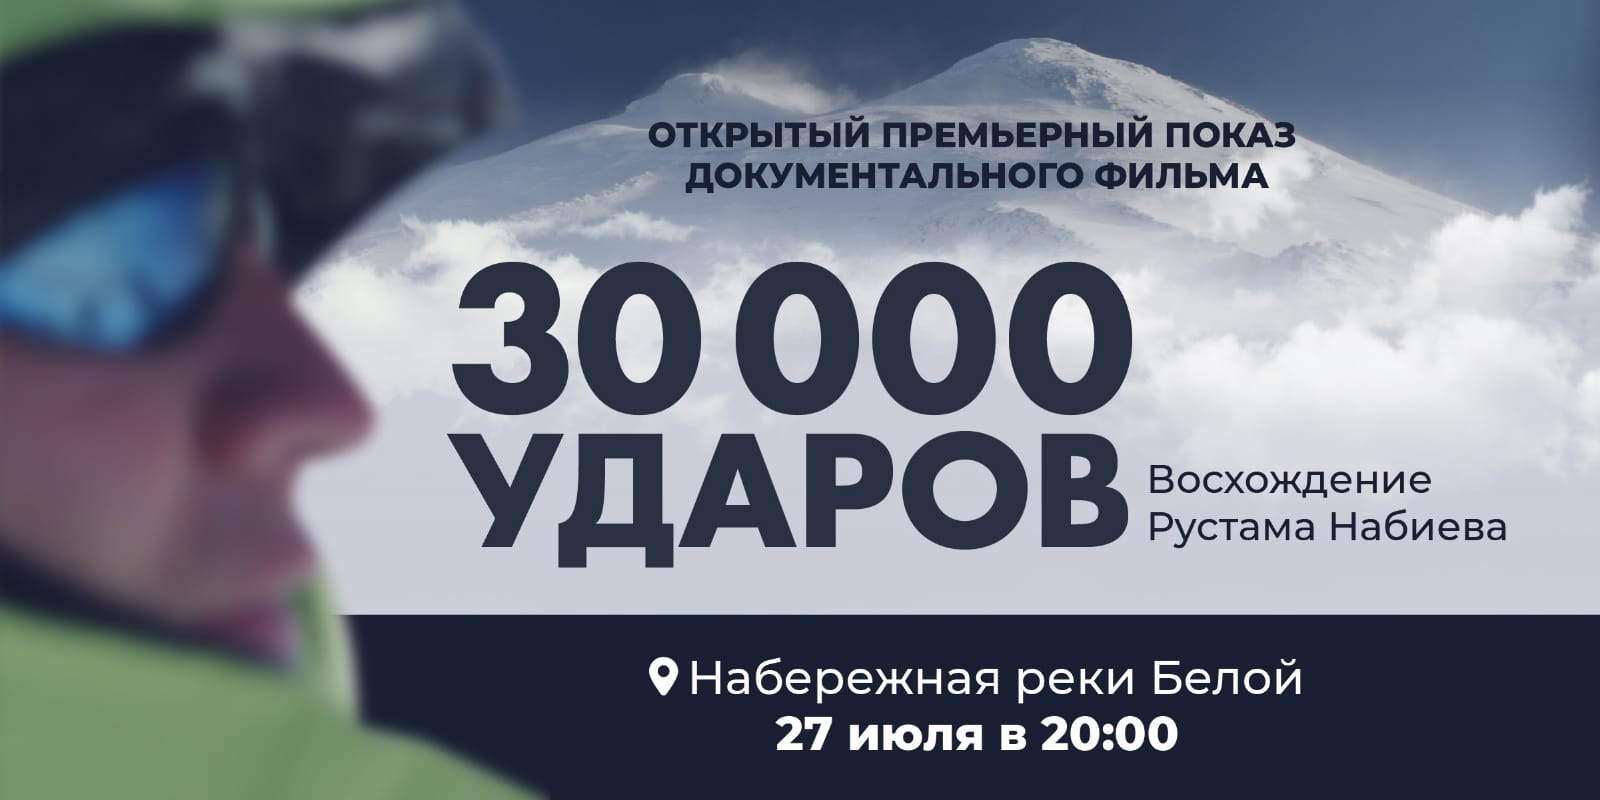 В Уфе состоится премьера документального фильма «30 000 ударов»